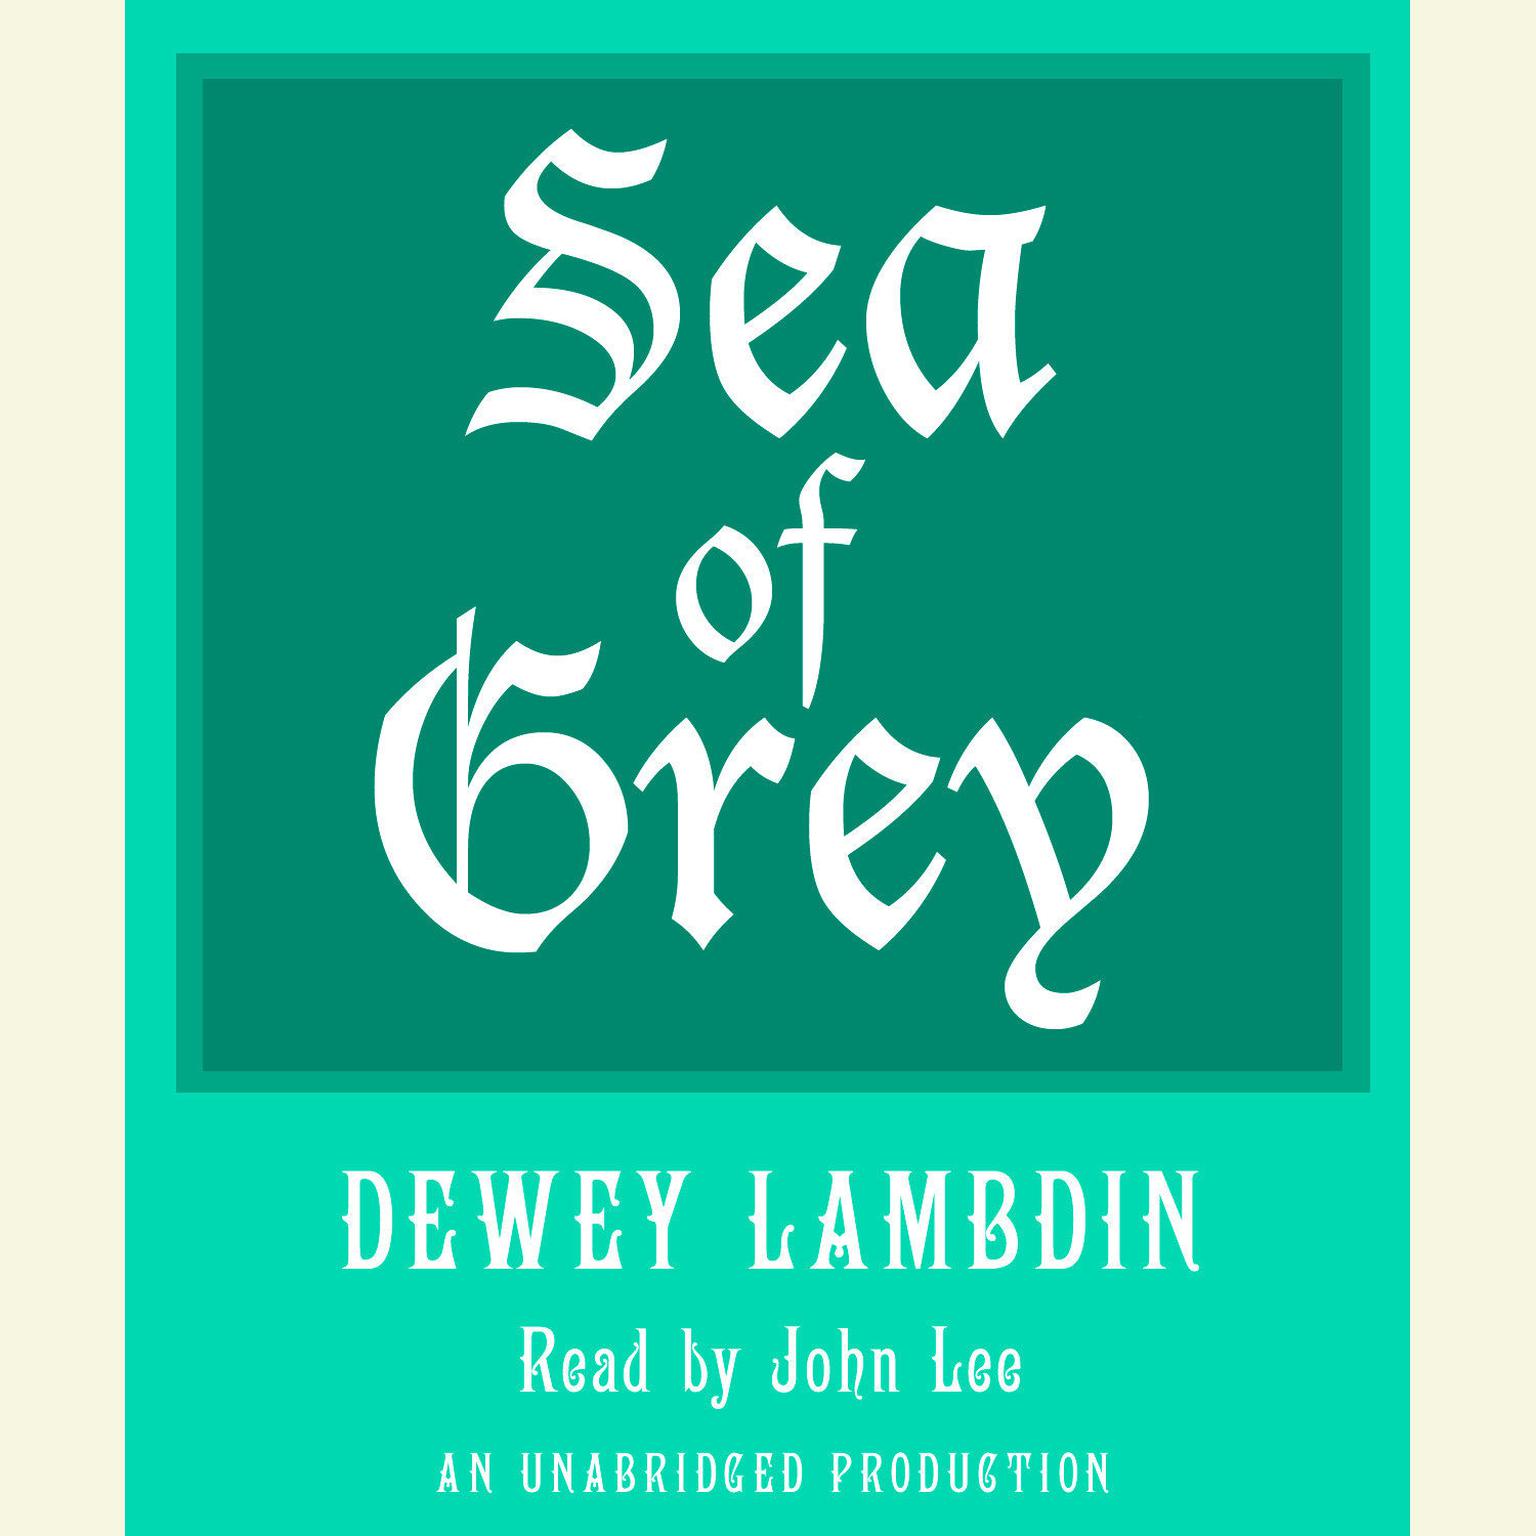 Sea of Grey Audiobook, by Dewey Lambdin